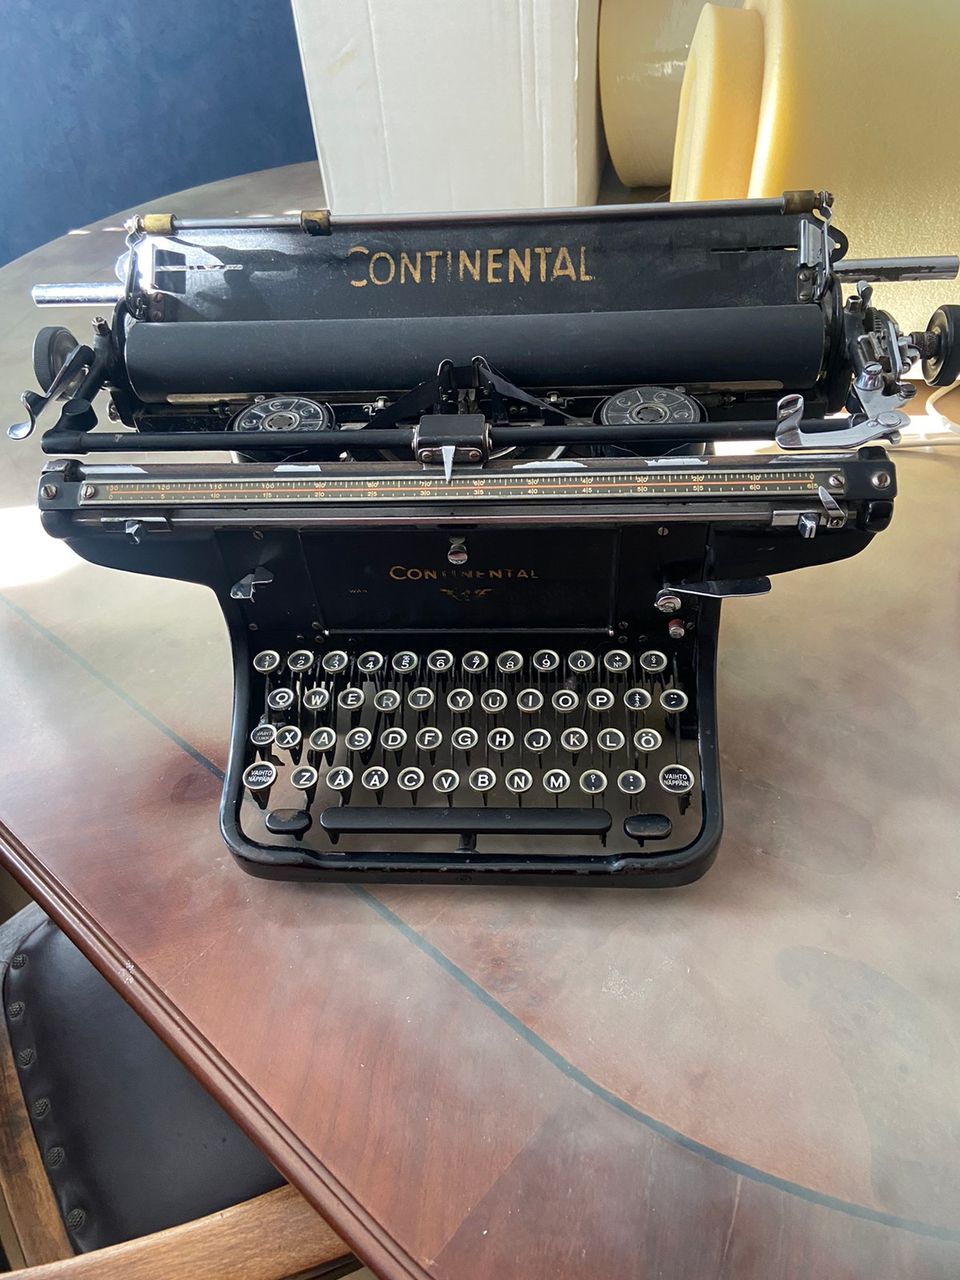 Myydään continental kirjoituskone